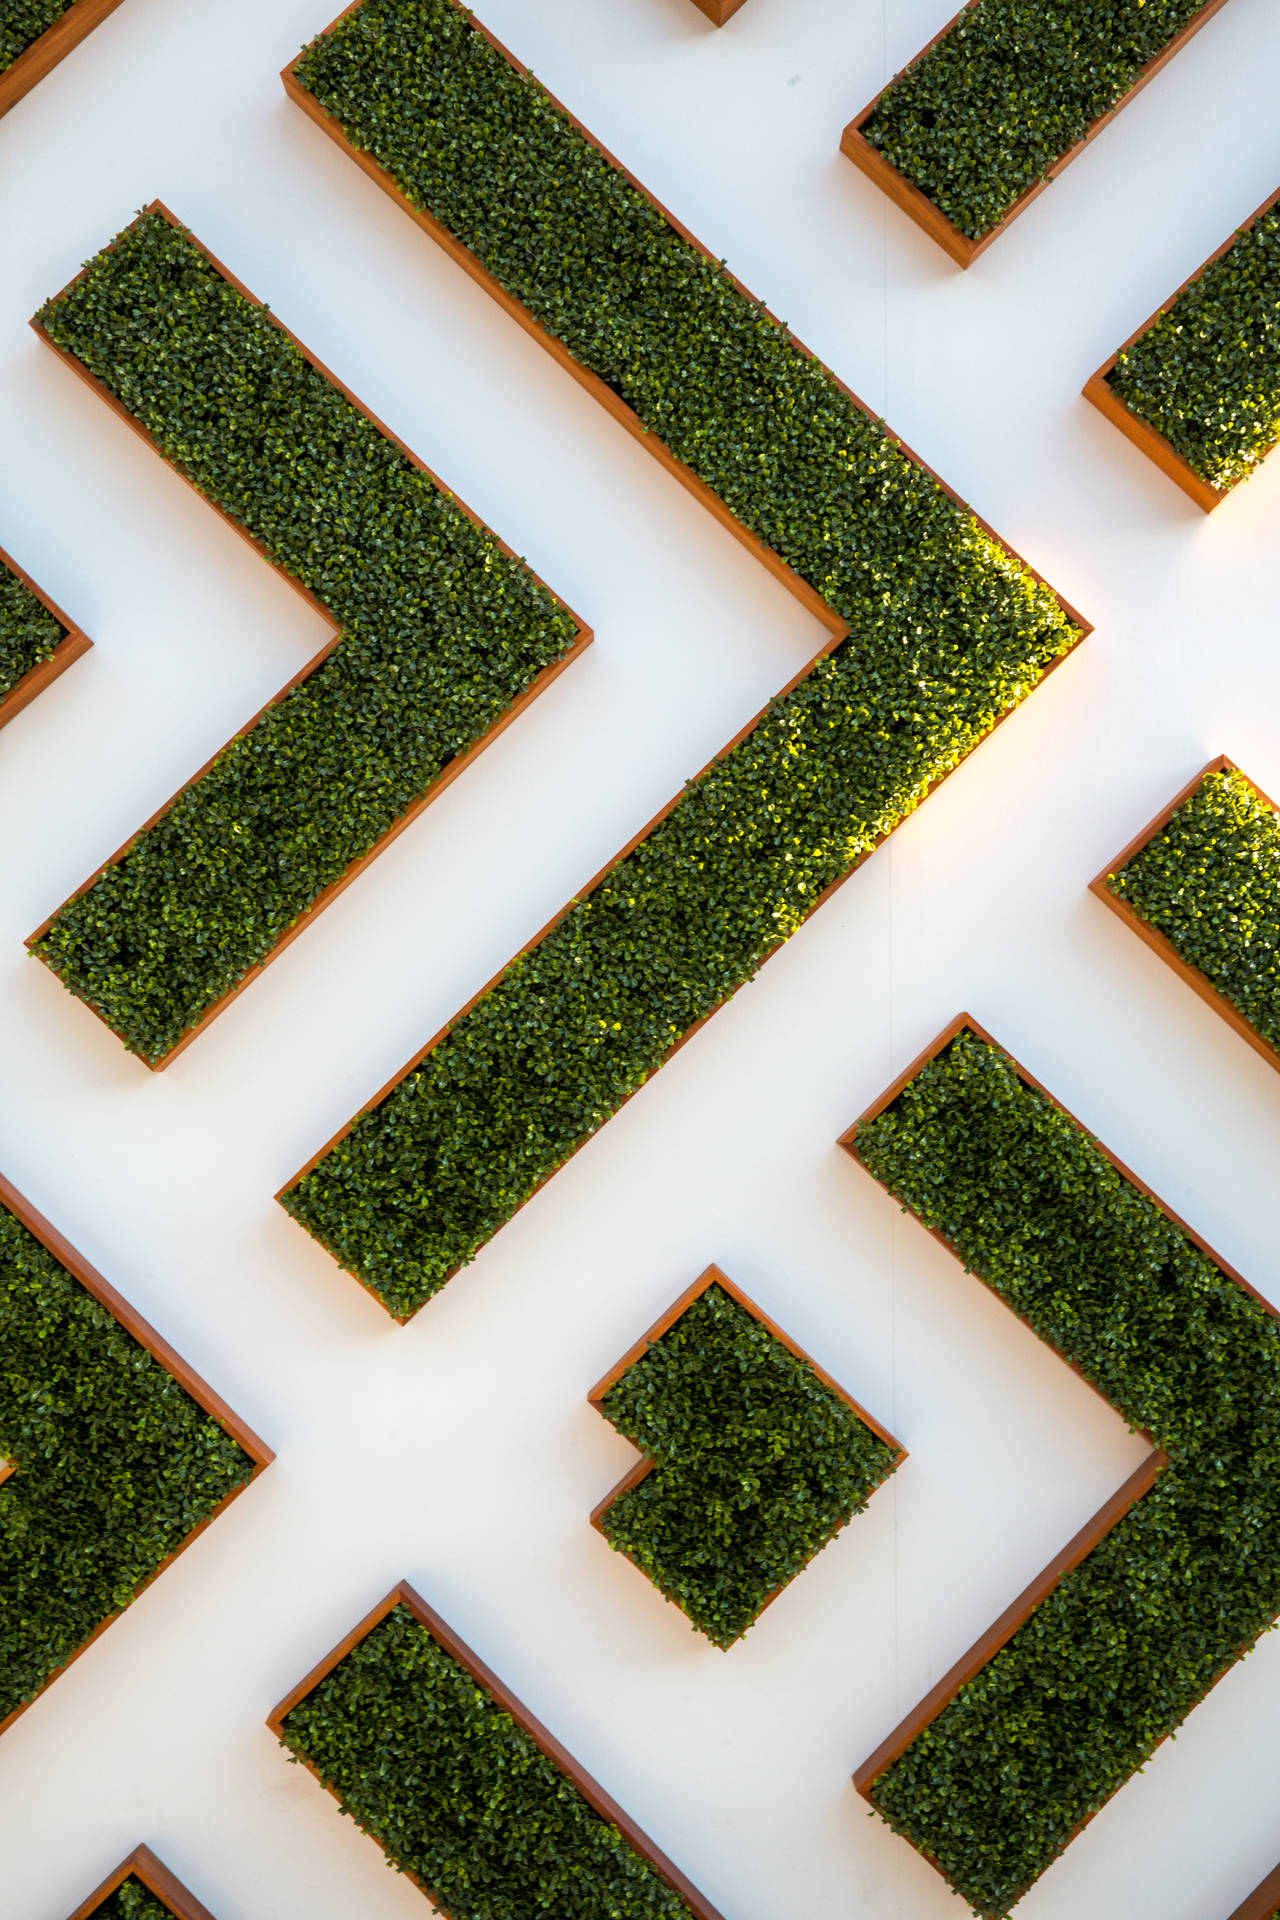 Abstract Maze Garden